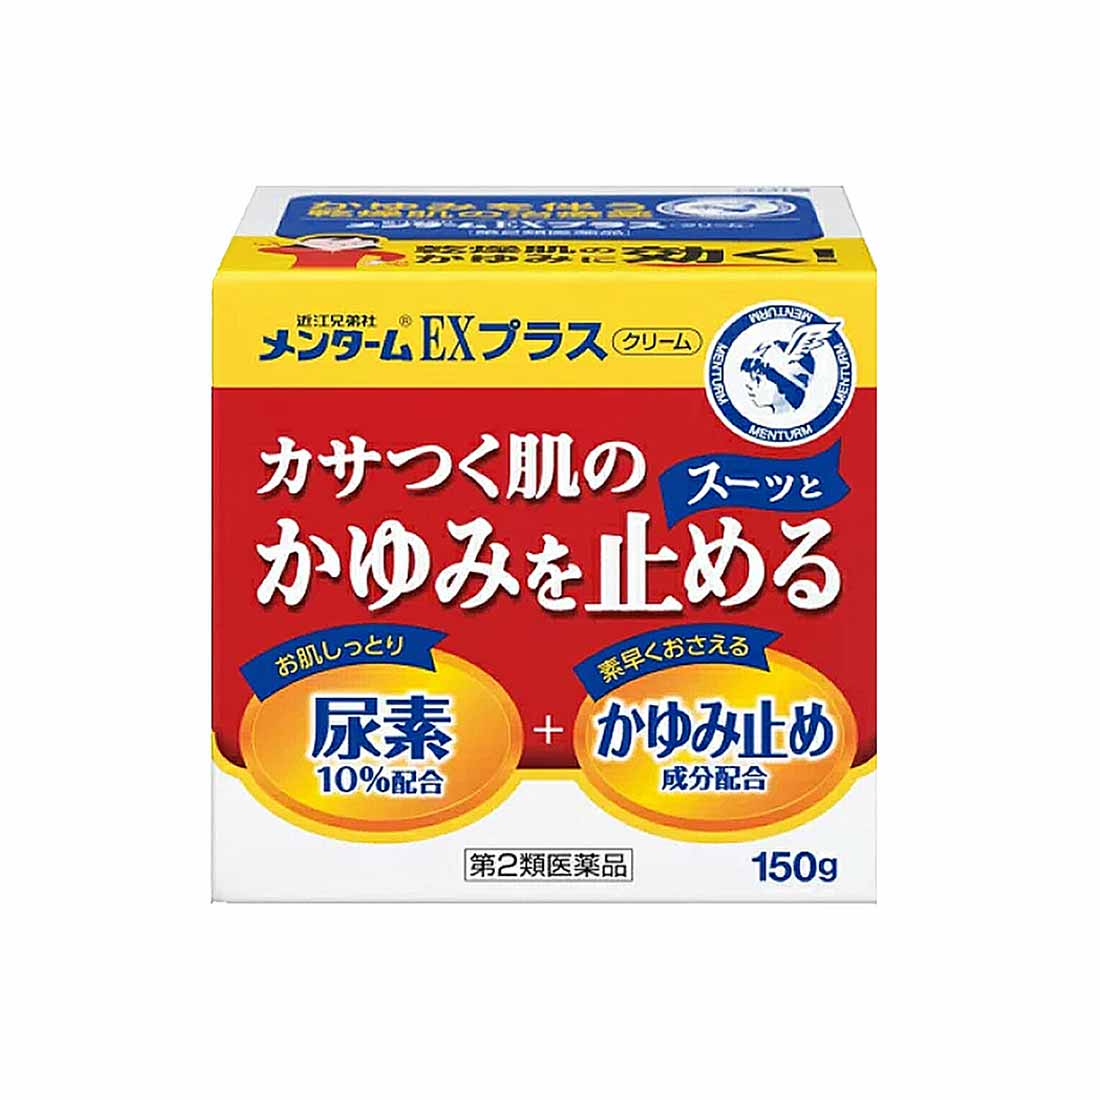 【送料無料】メンターム EXプラス クリーム 150g【第2類医薬品】